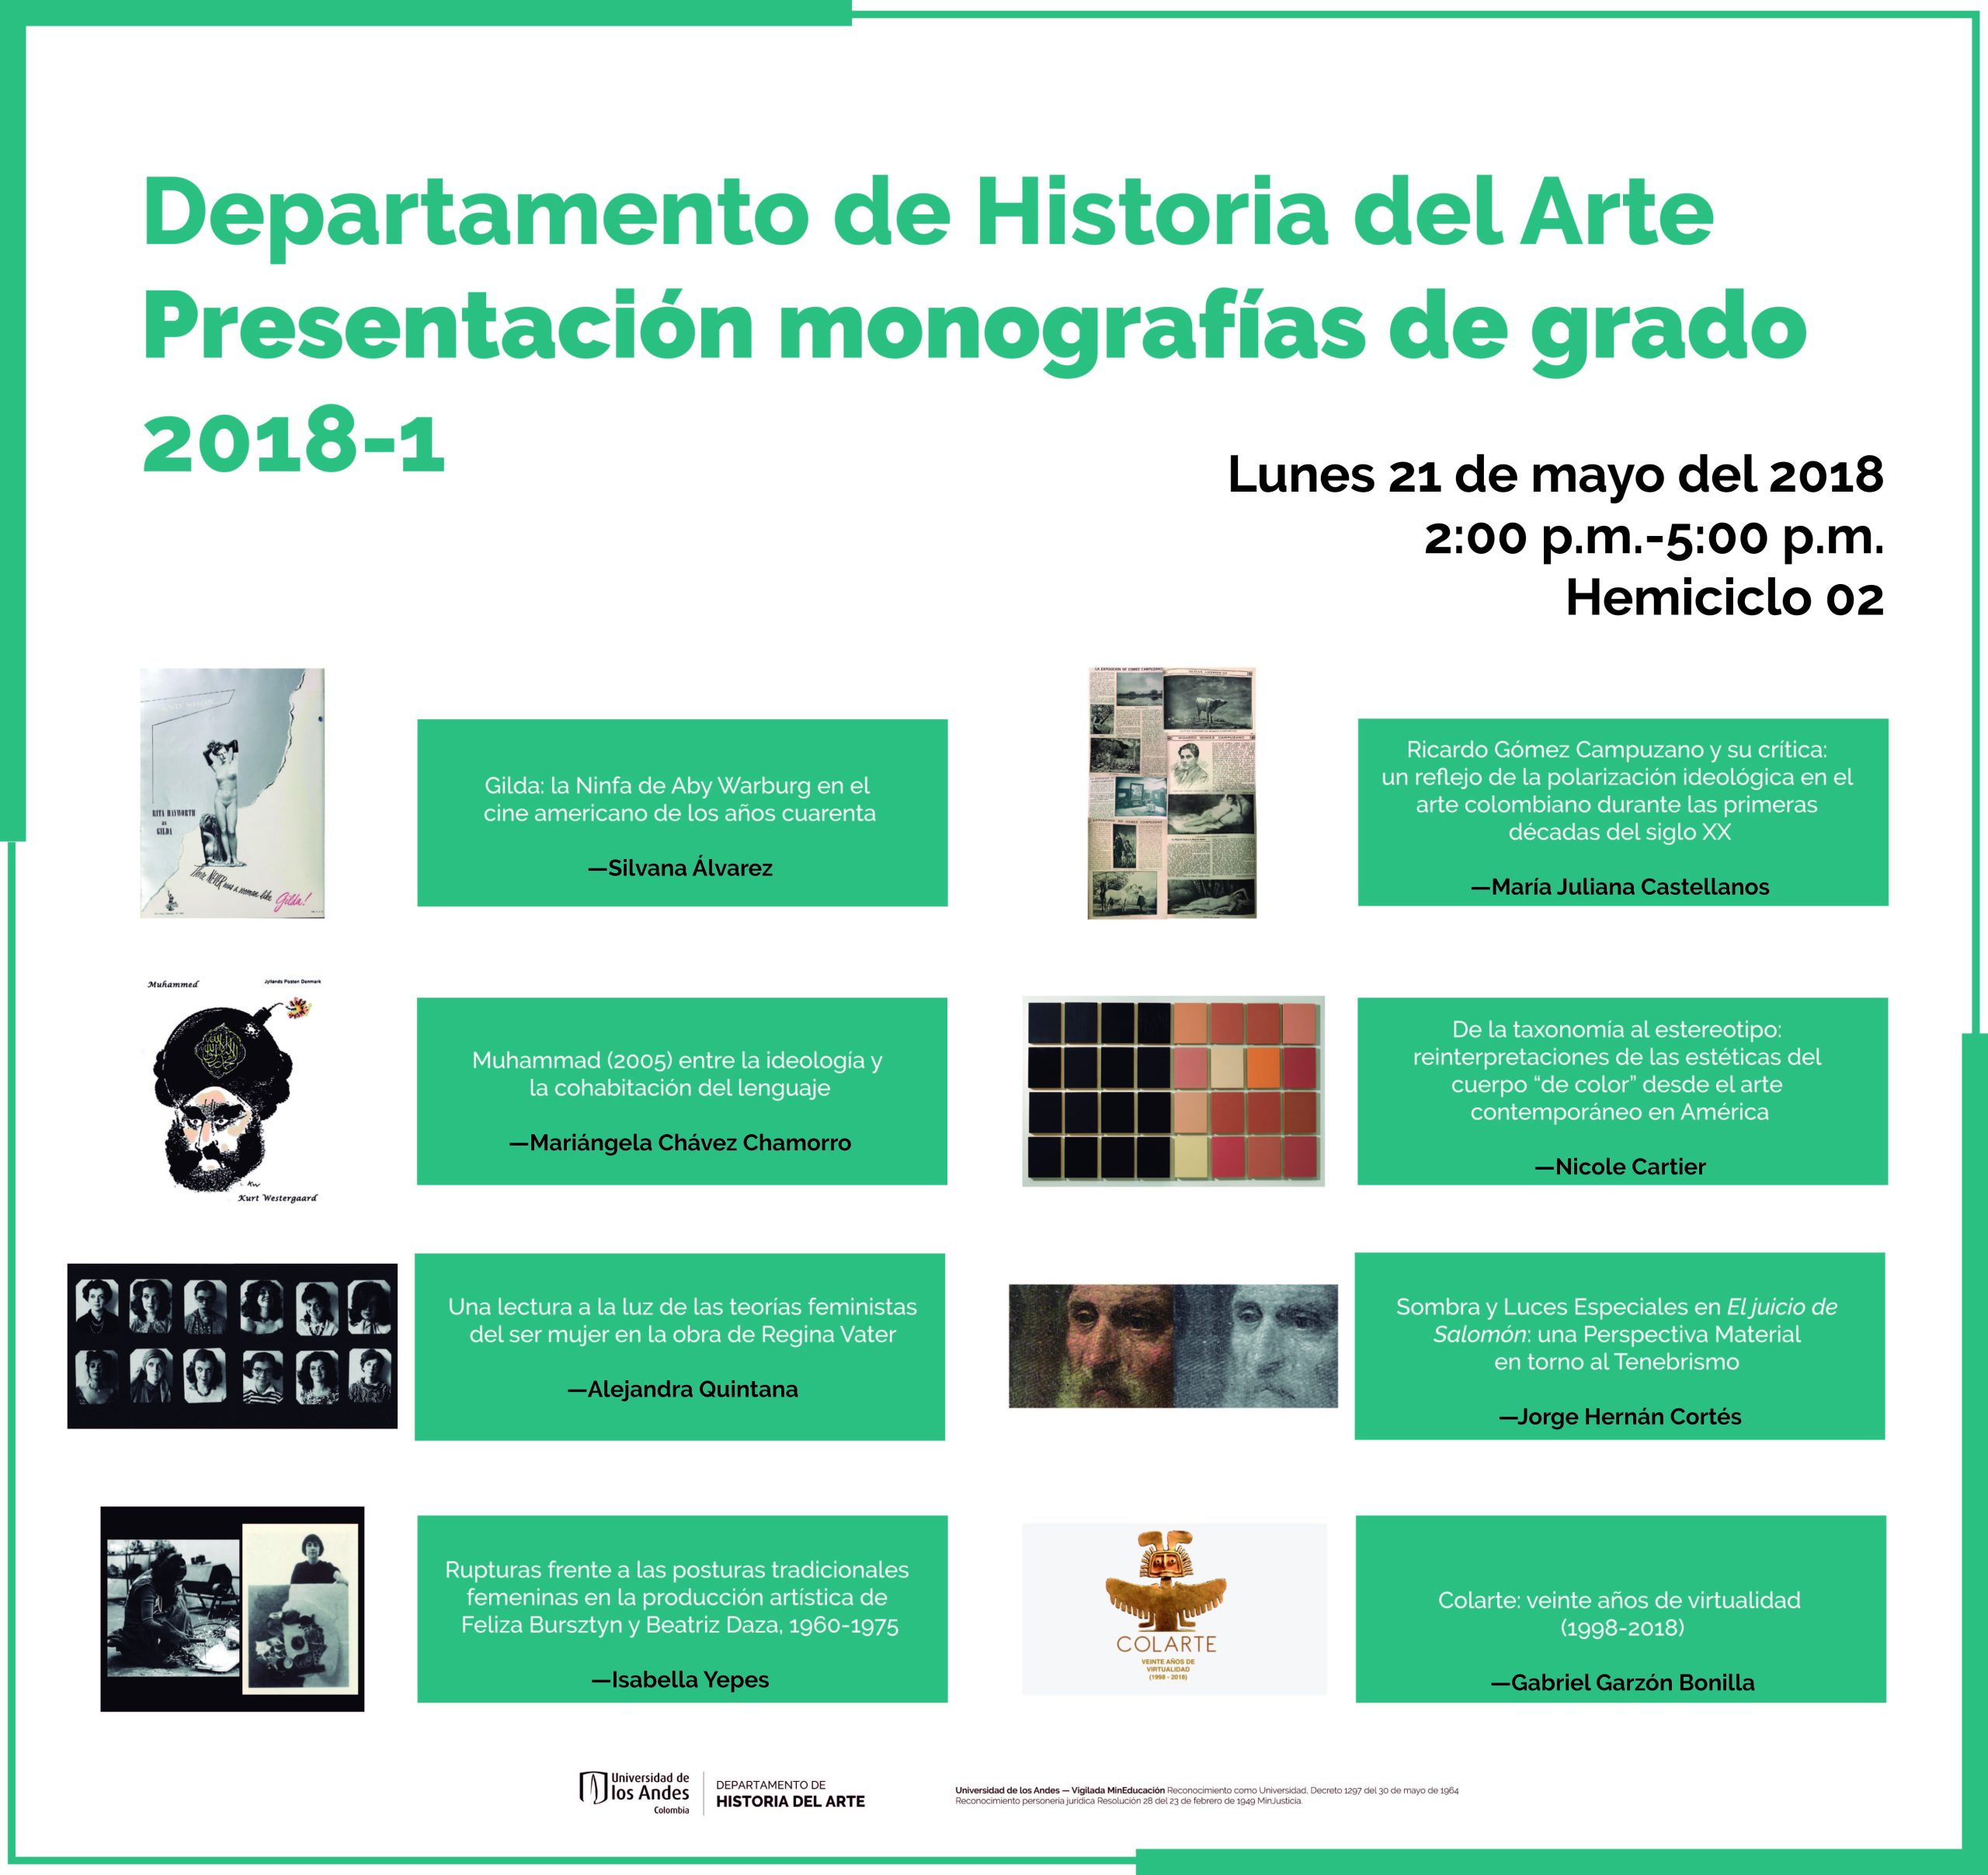 Presentación de monografías de grado 2018-1 del Departamento de Historia del Arte